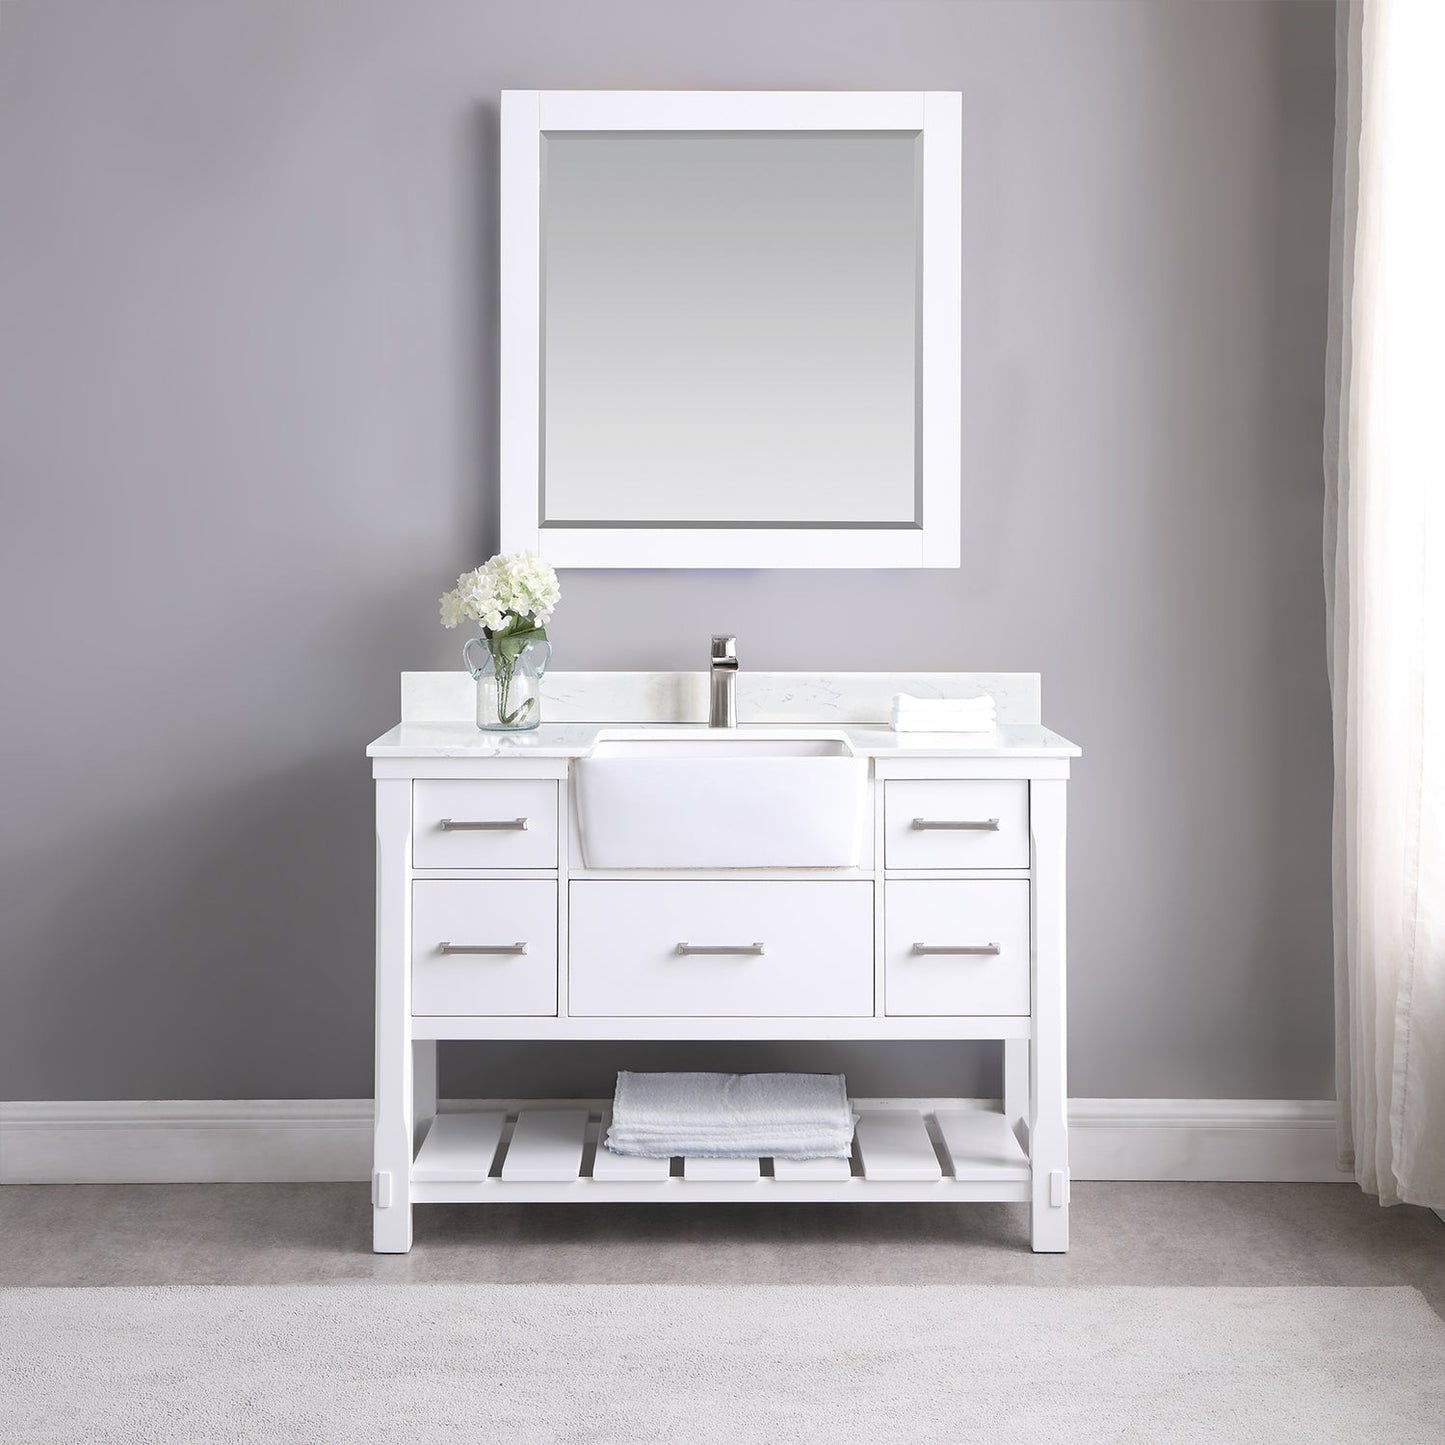 Georgia 48" Single Bathroom Vanity Set in White and Aosta White Composite Stone Top with White Farmhouse Basin without Mirror